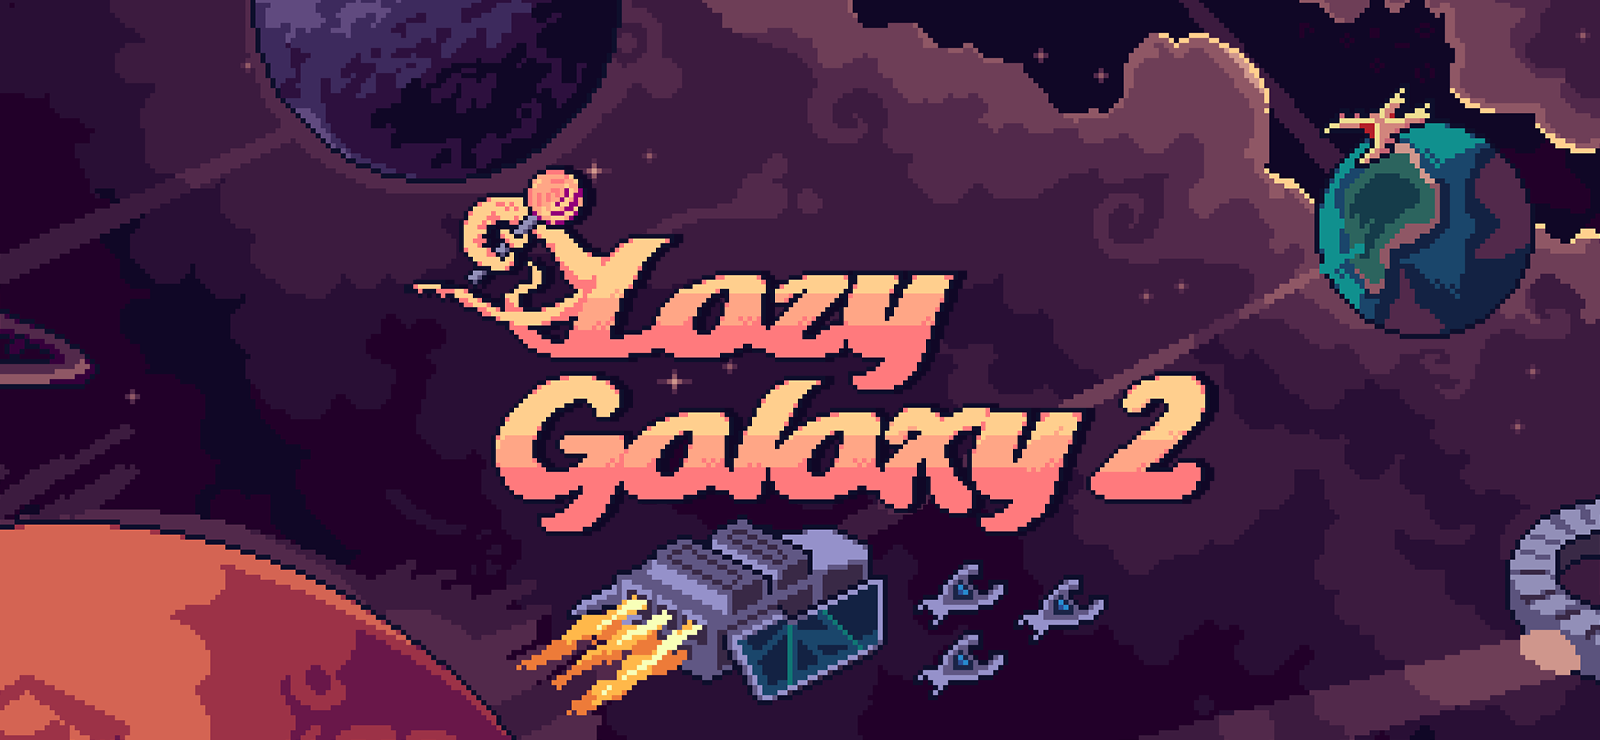 Lazy Galaxy 2